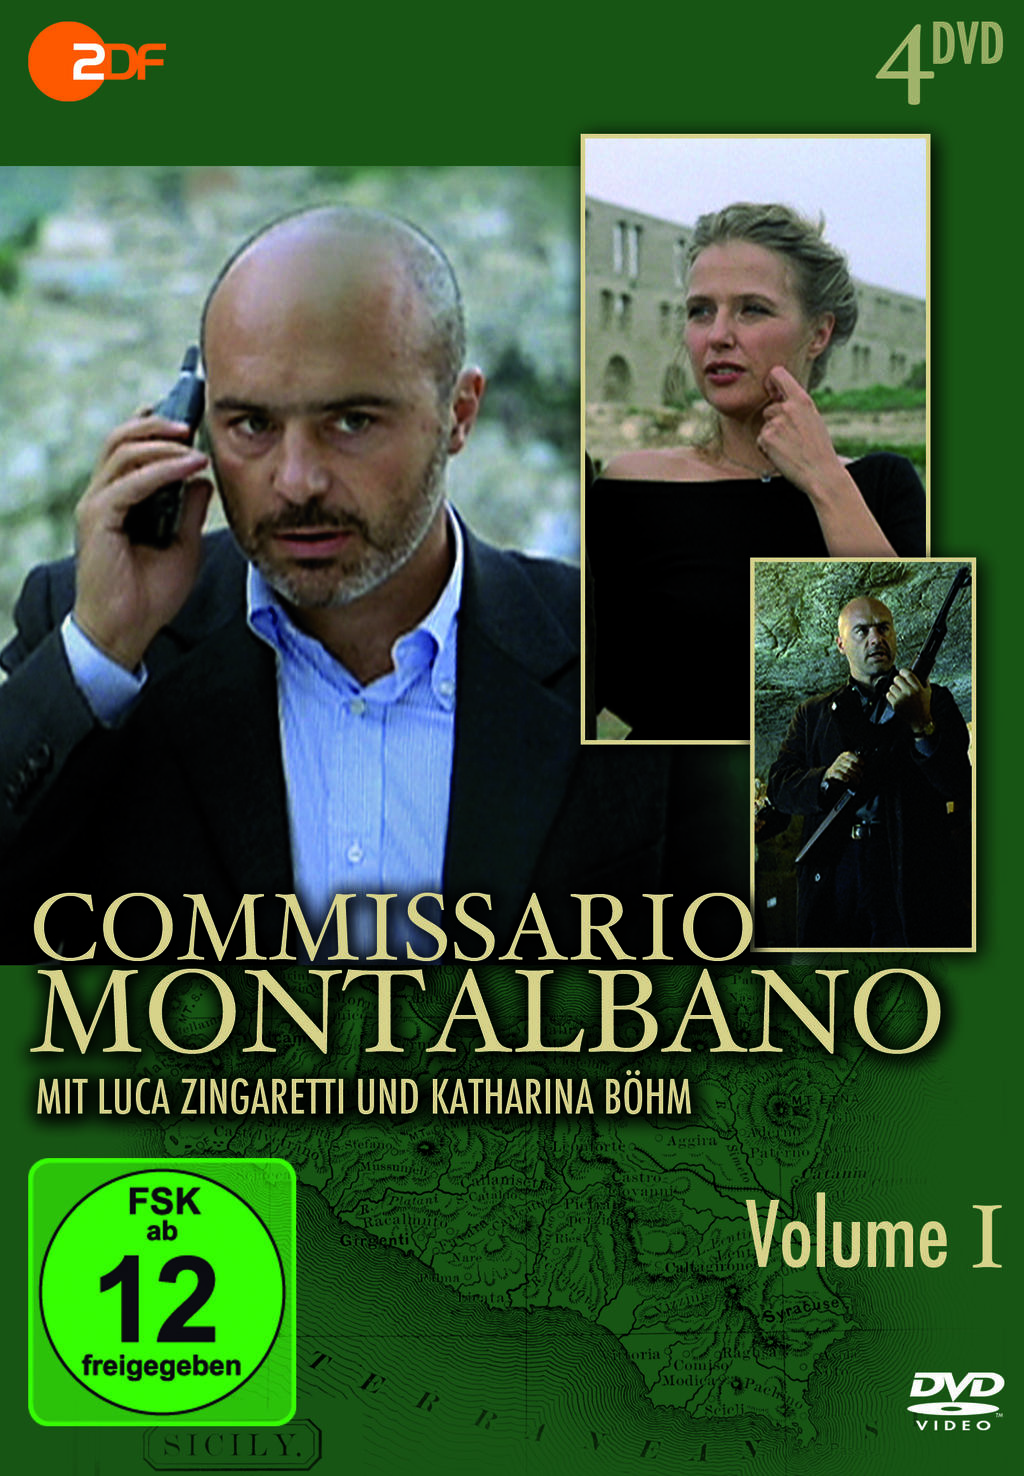 Commissario Montalbano: Una lama di luce | Season 9 | Episode 4